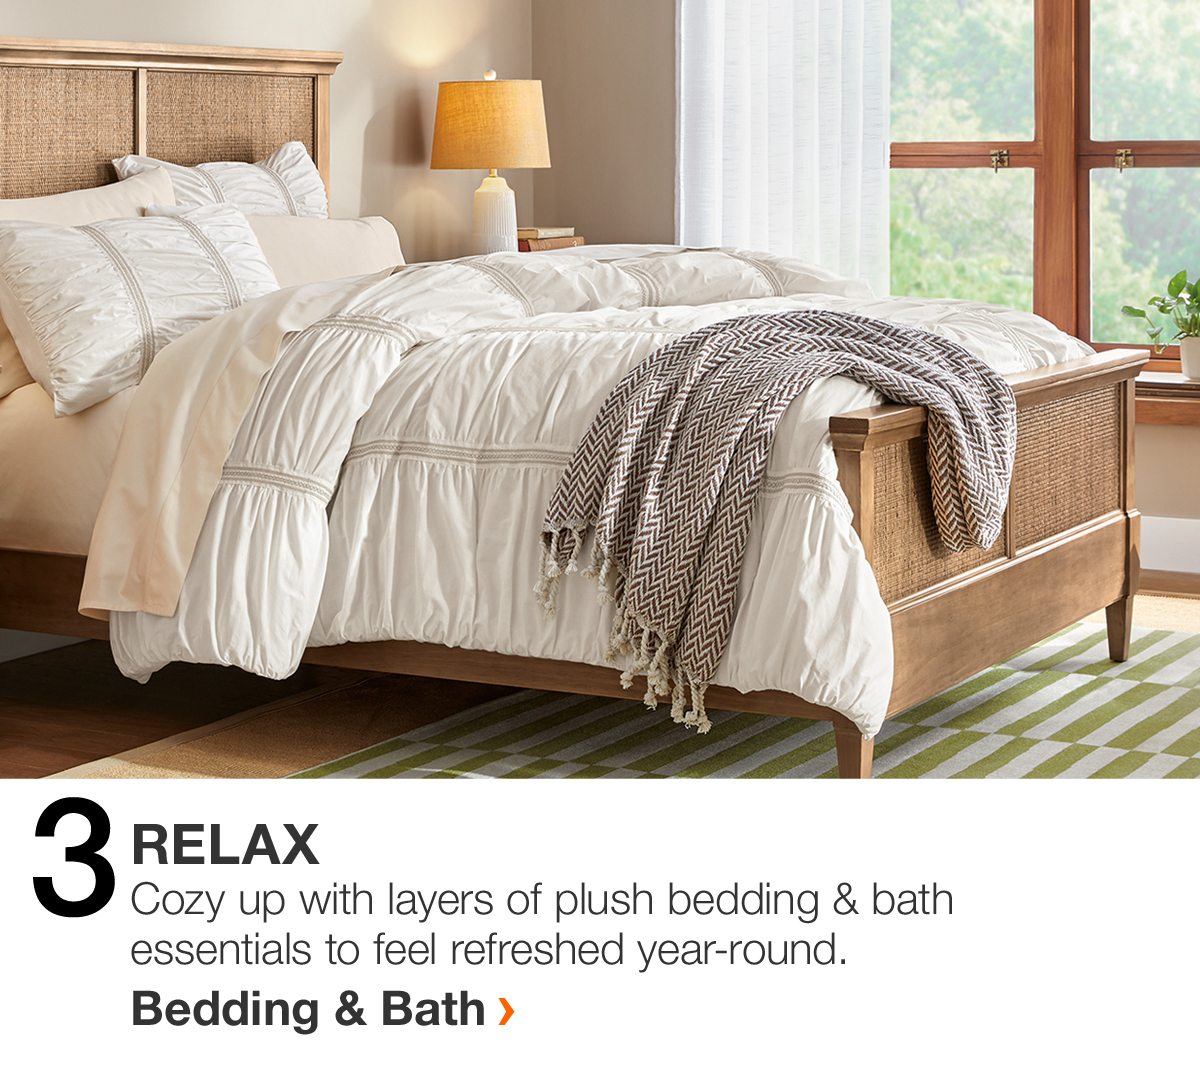 Bedding & Bath